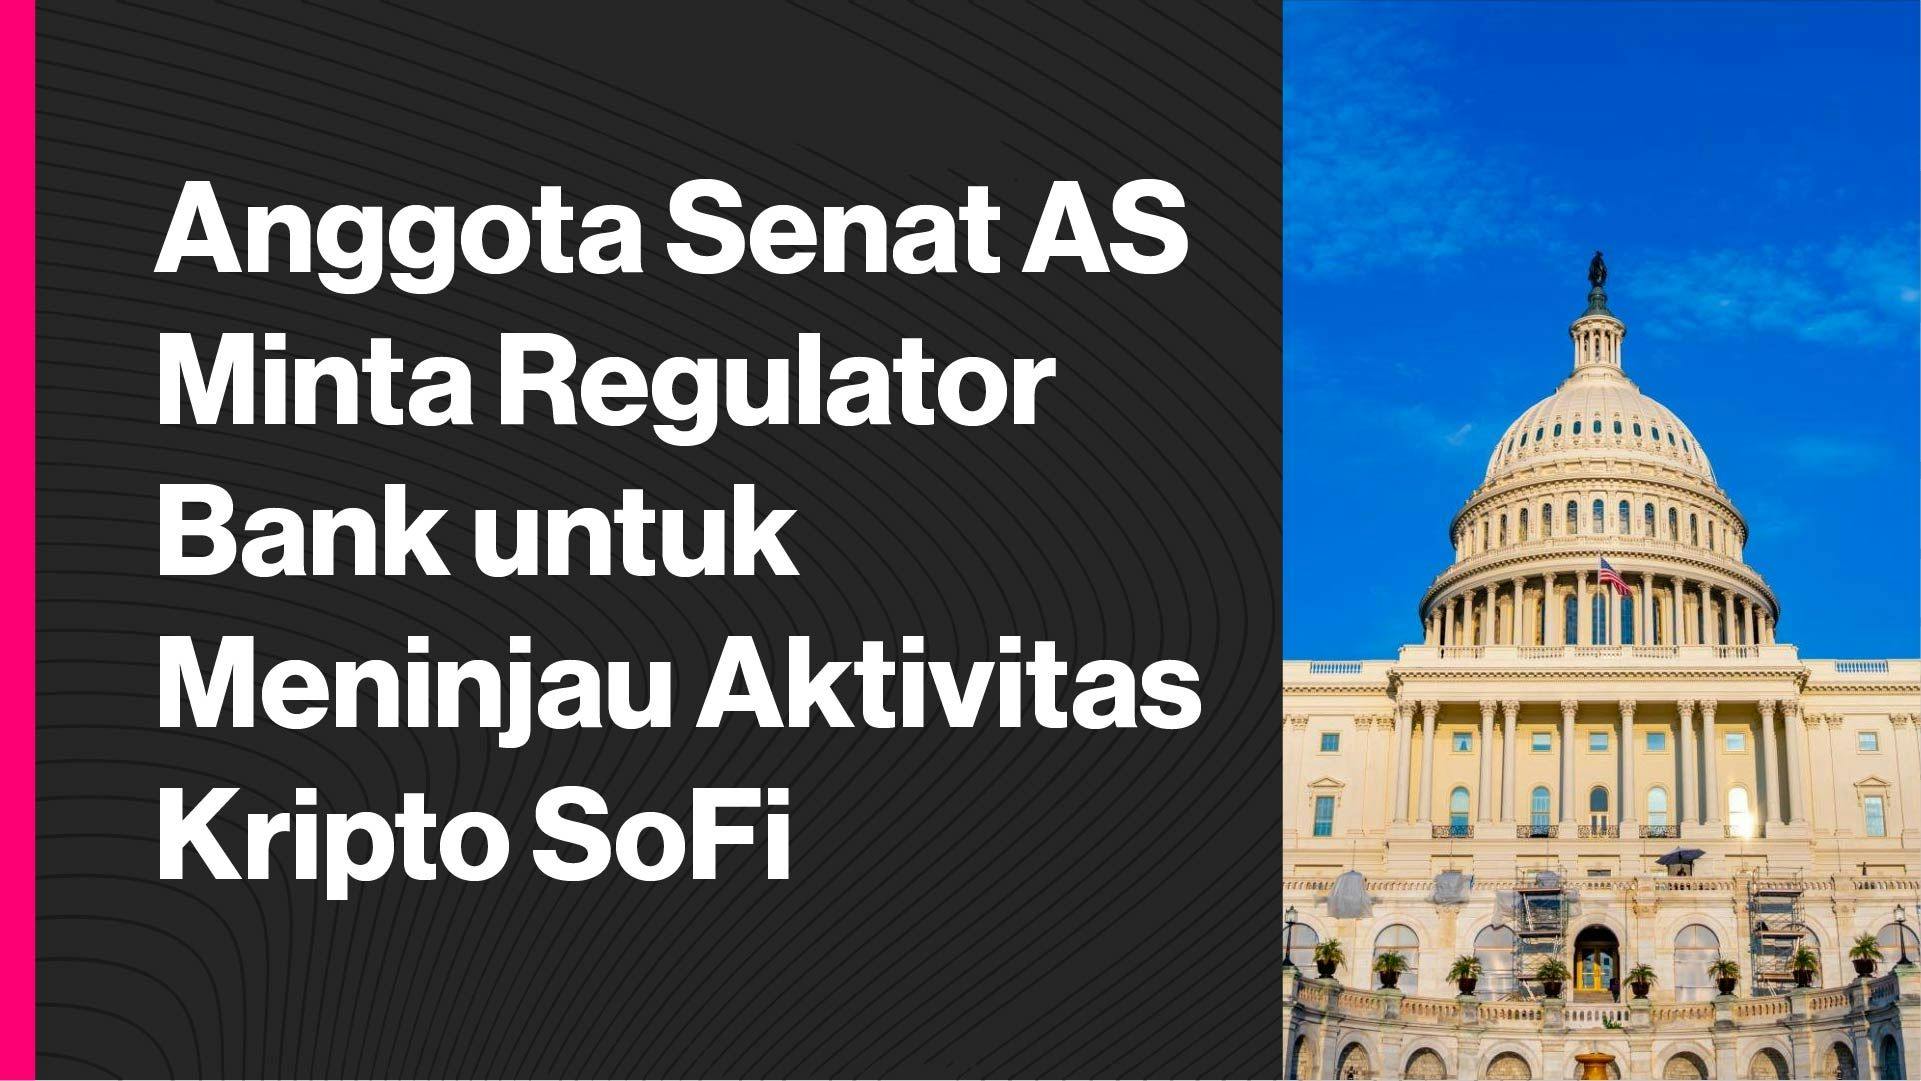 Senator AS menulis surat terbuka kepada SoFi dan beberapa regulator bank. (Foto CDI)